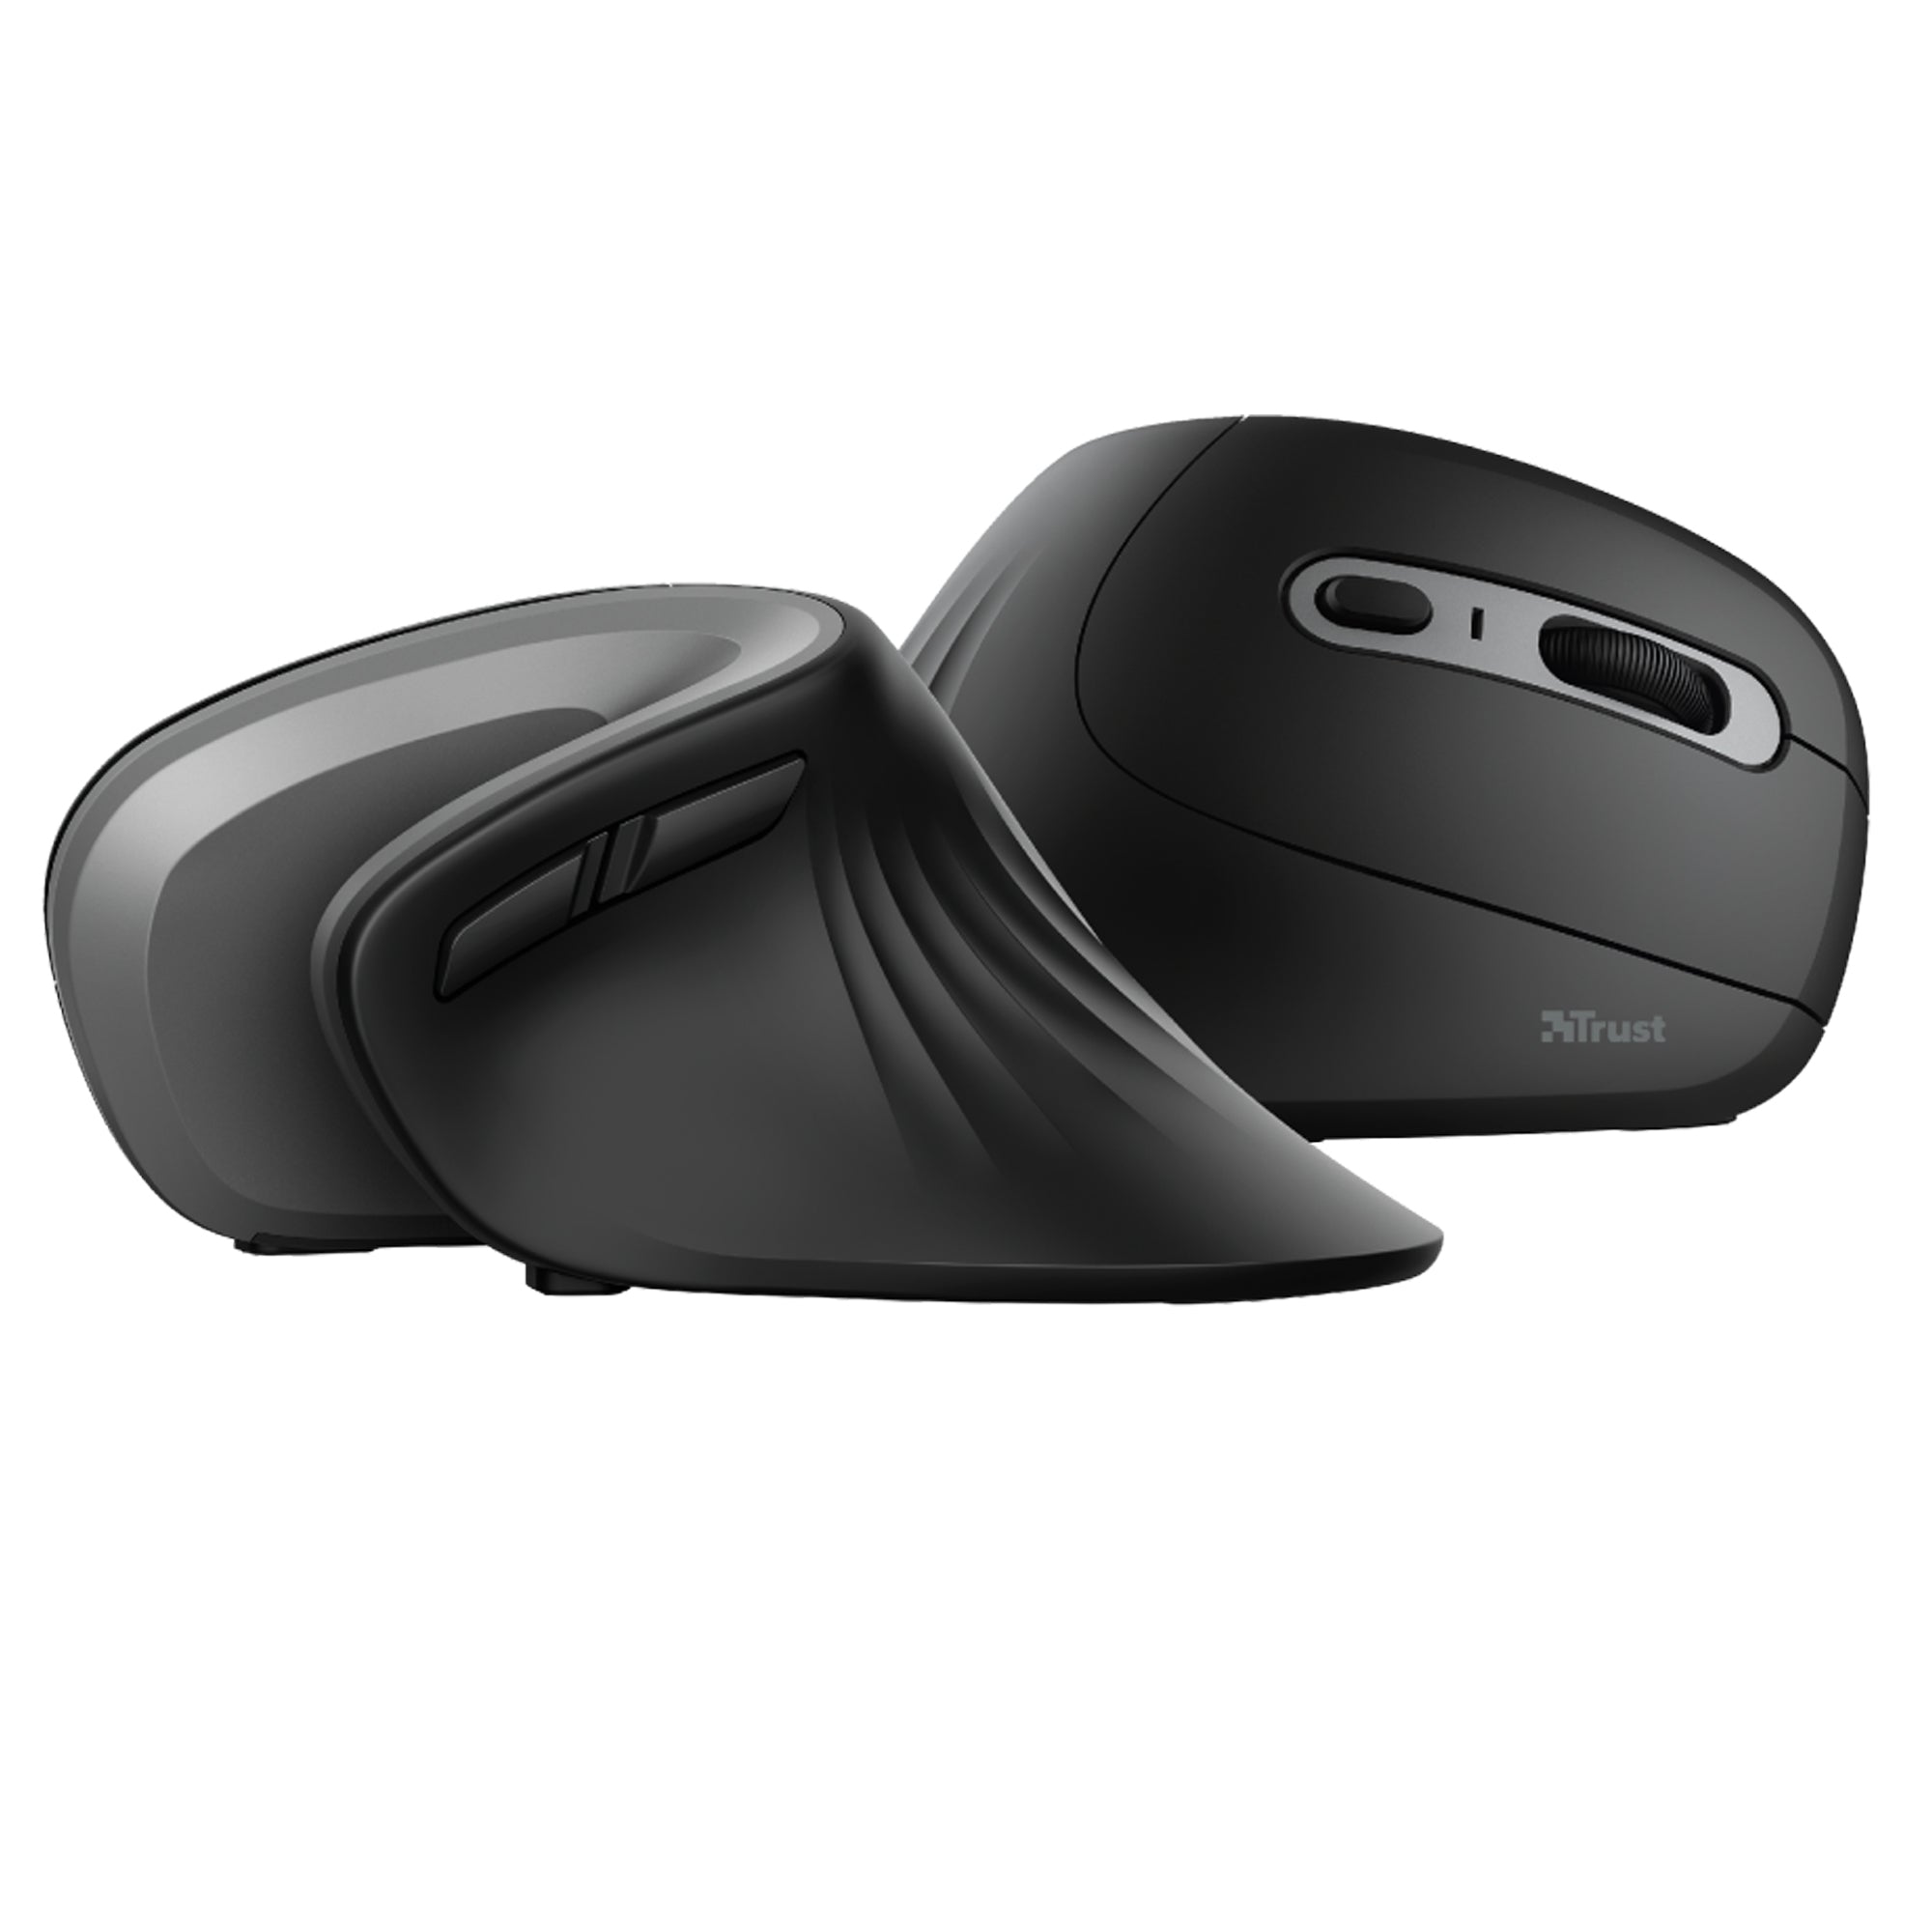 trust-mouse-wireless-ergonomico-verticale-verro-